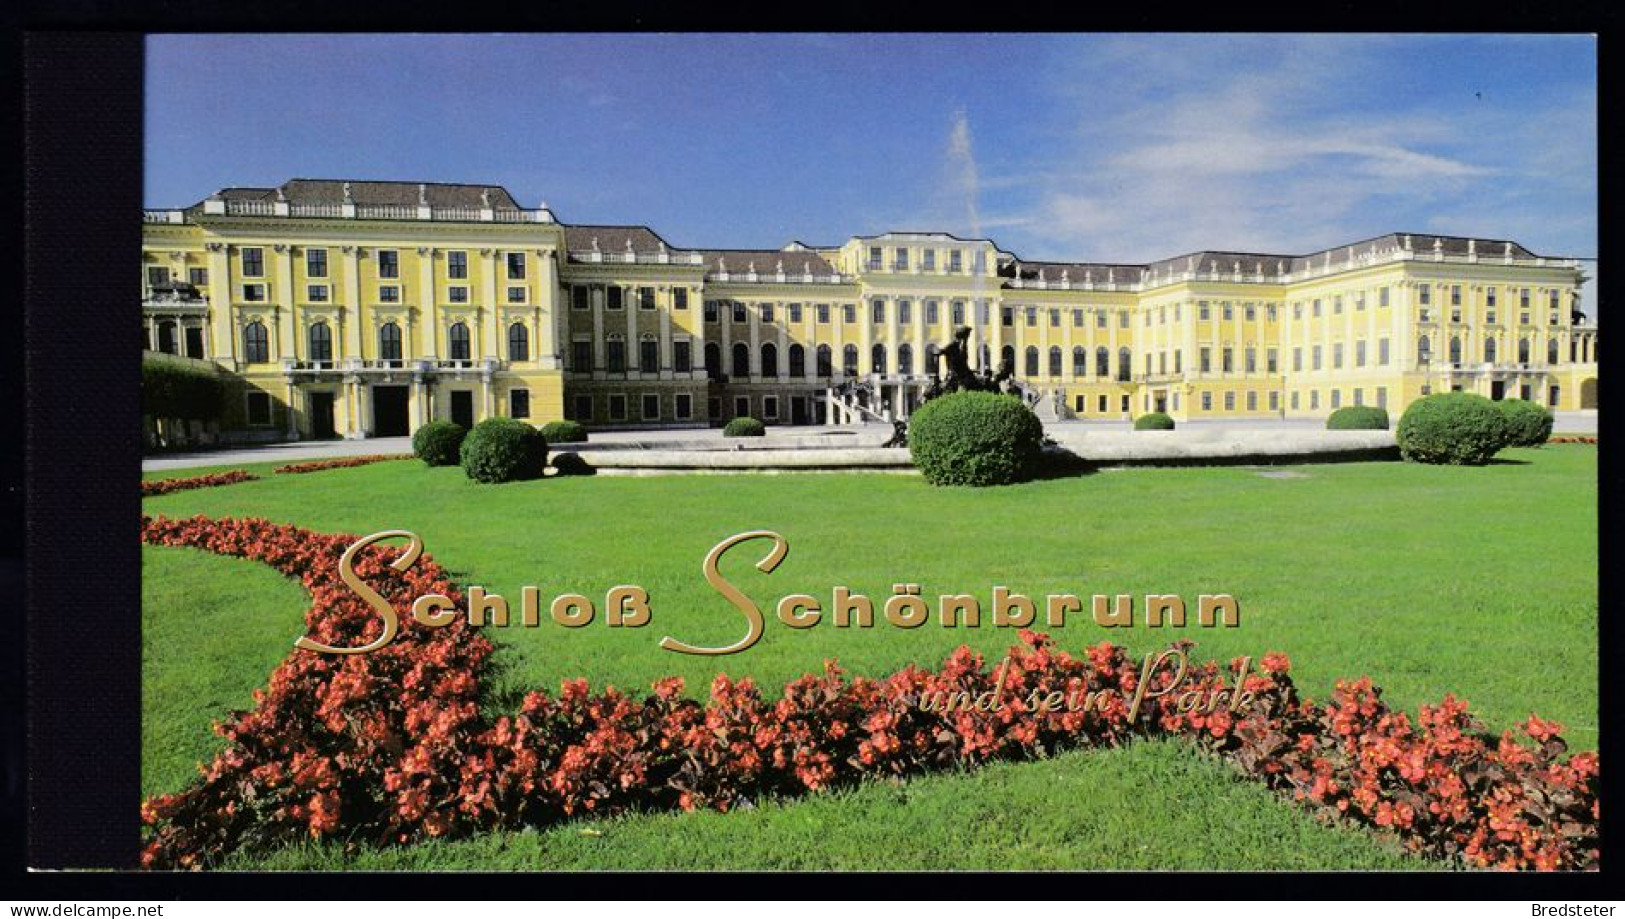 UNO WIEN - Markenheftchen , Booklet , Schloss Schönbrunn - Otros - Europa